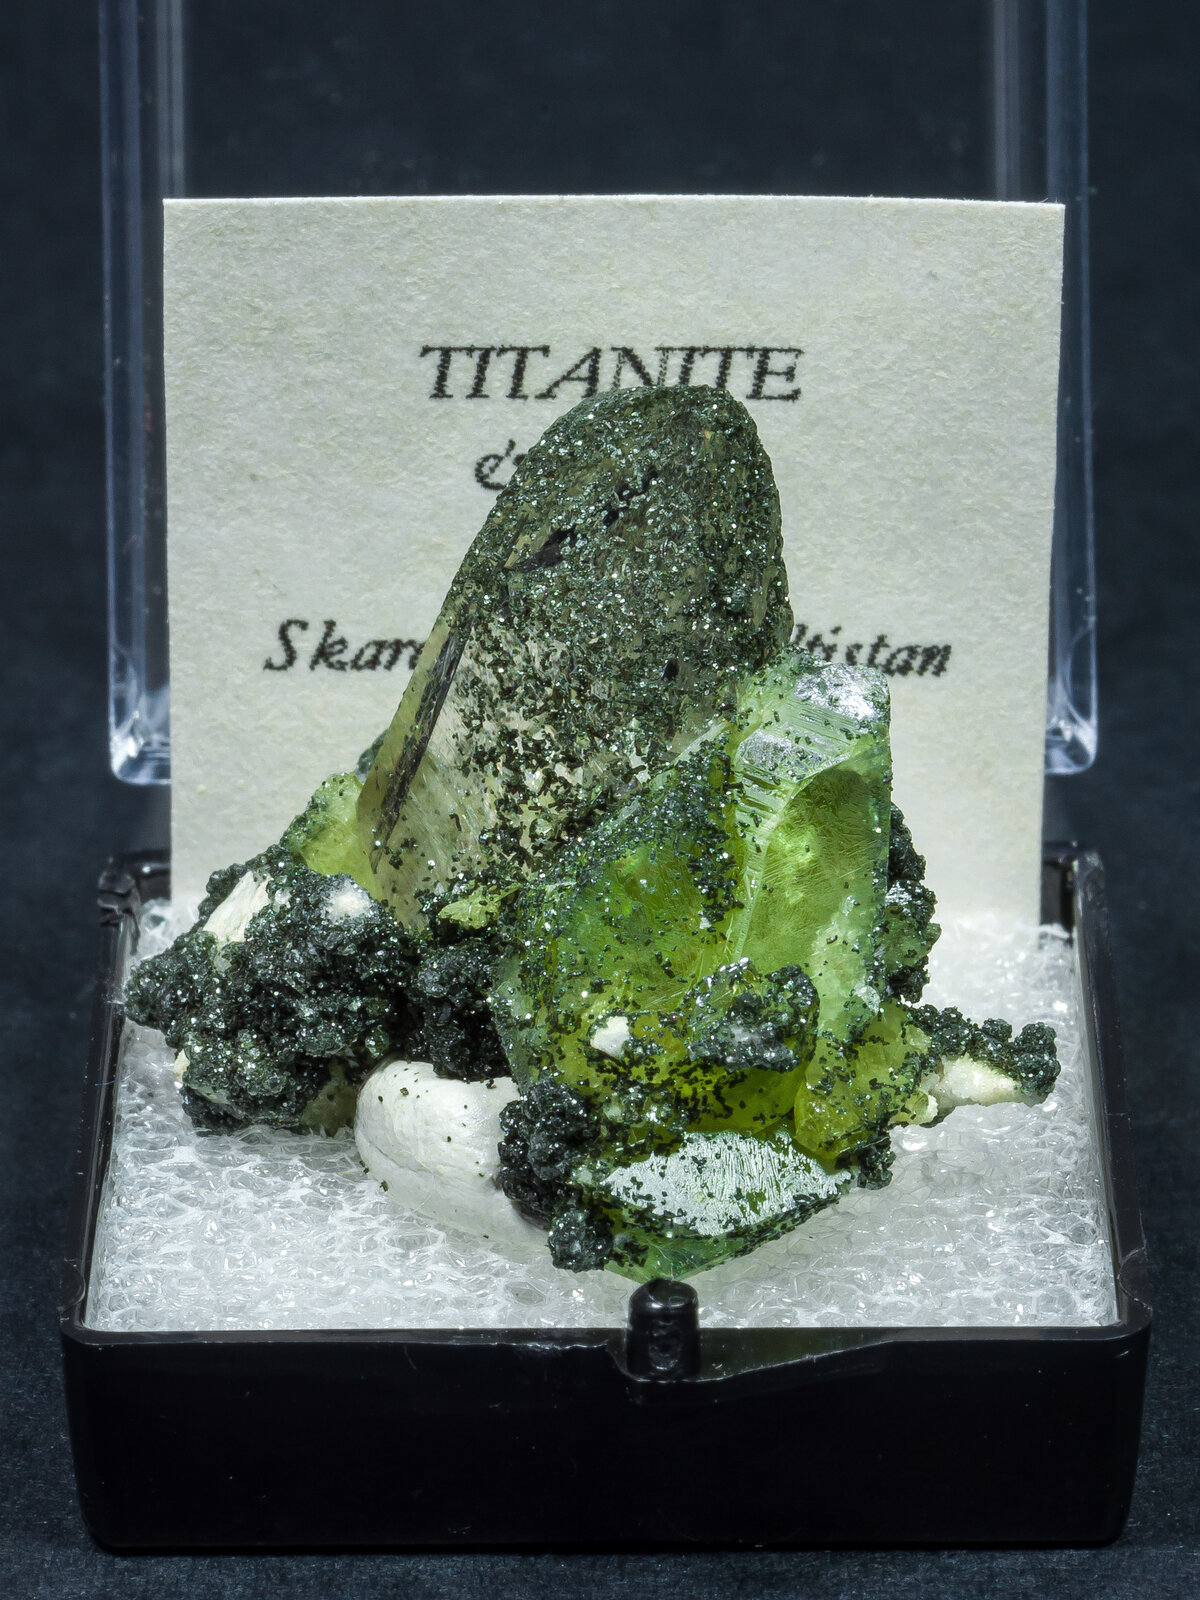 specimens/s_imagesAN2/Titanite-TQ14AN2f1.jpg